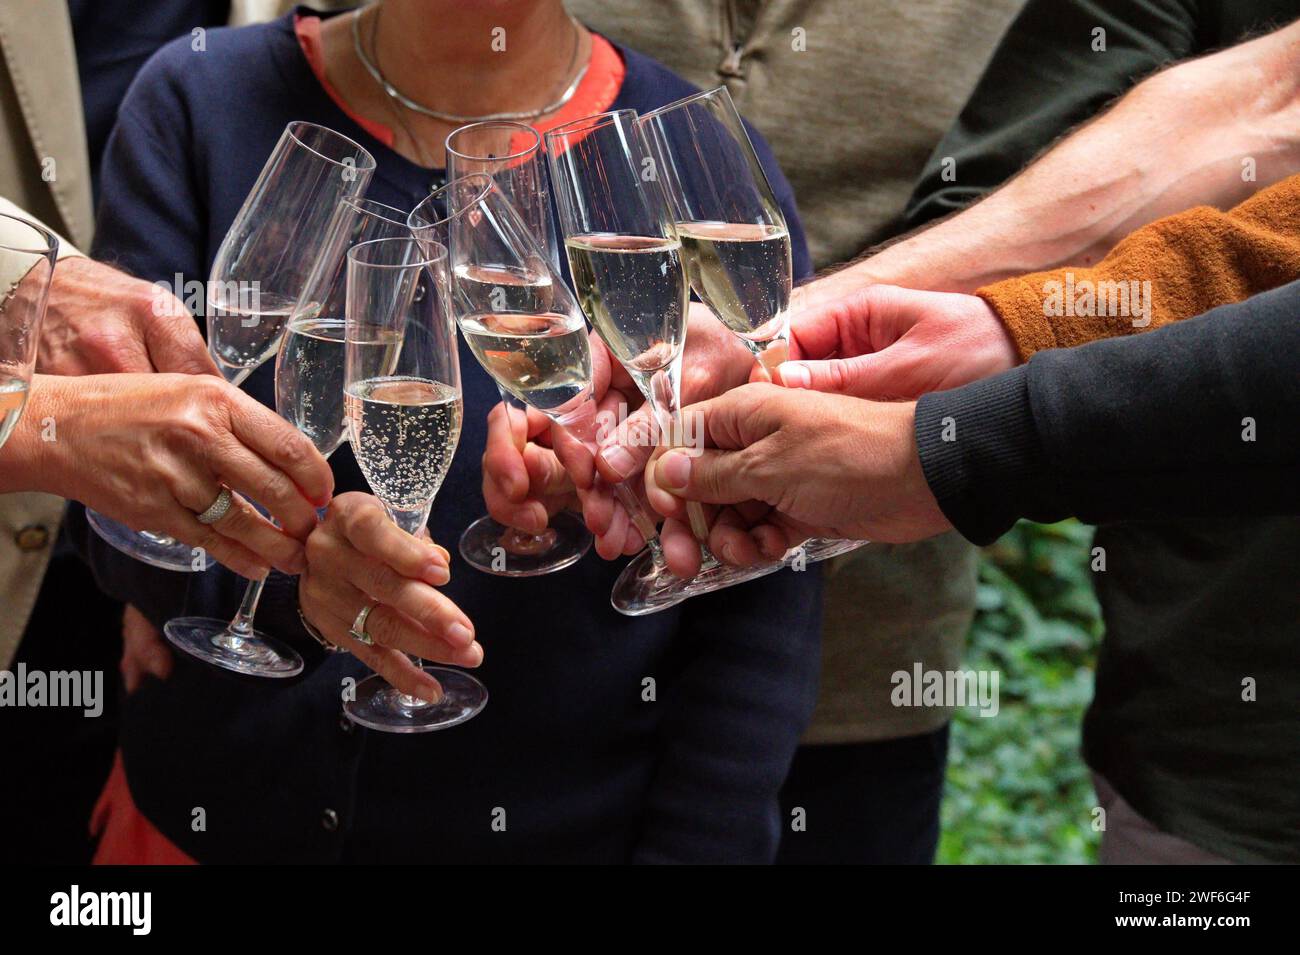 Groupe de personnes grillage avec champagne Banque D'Images